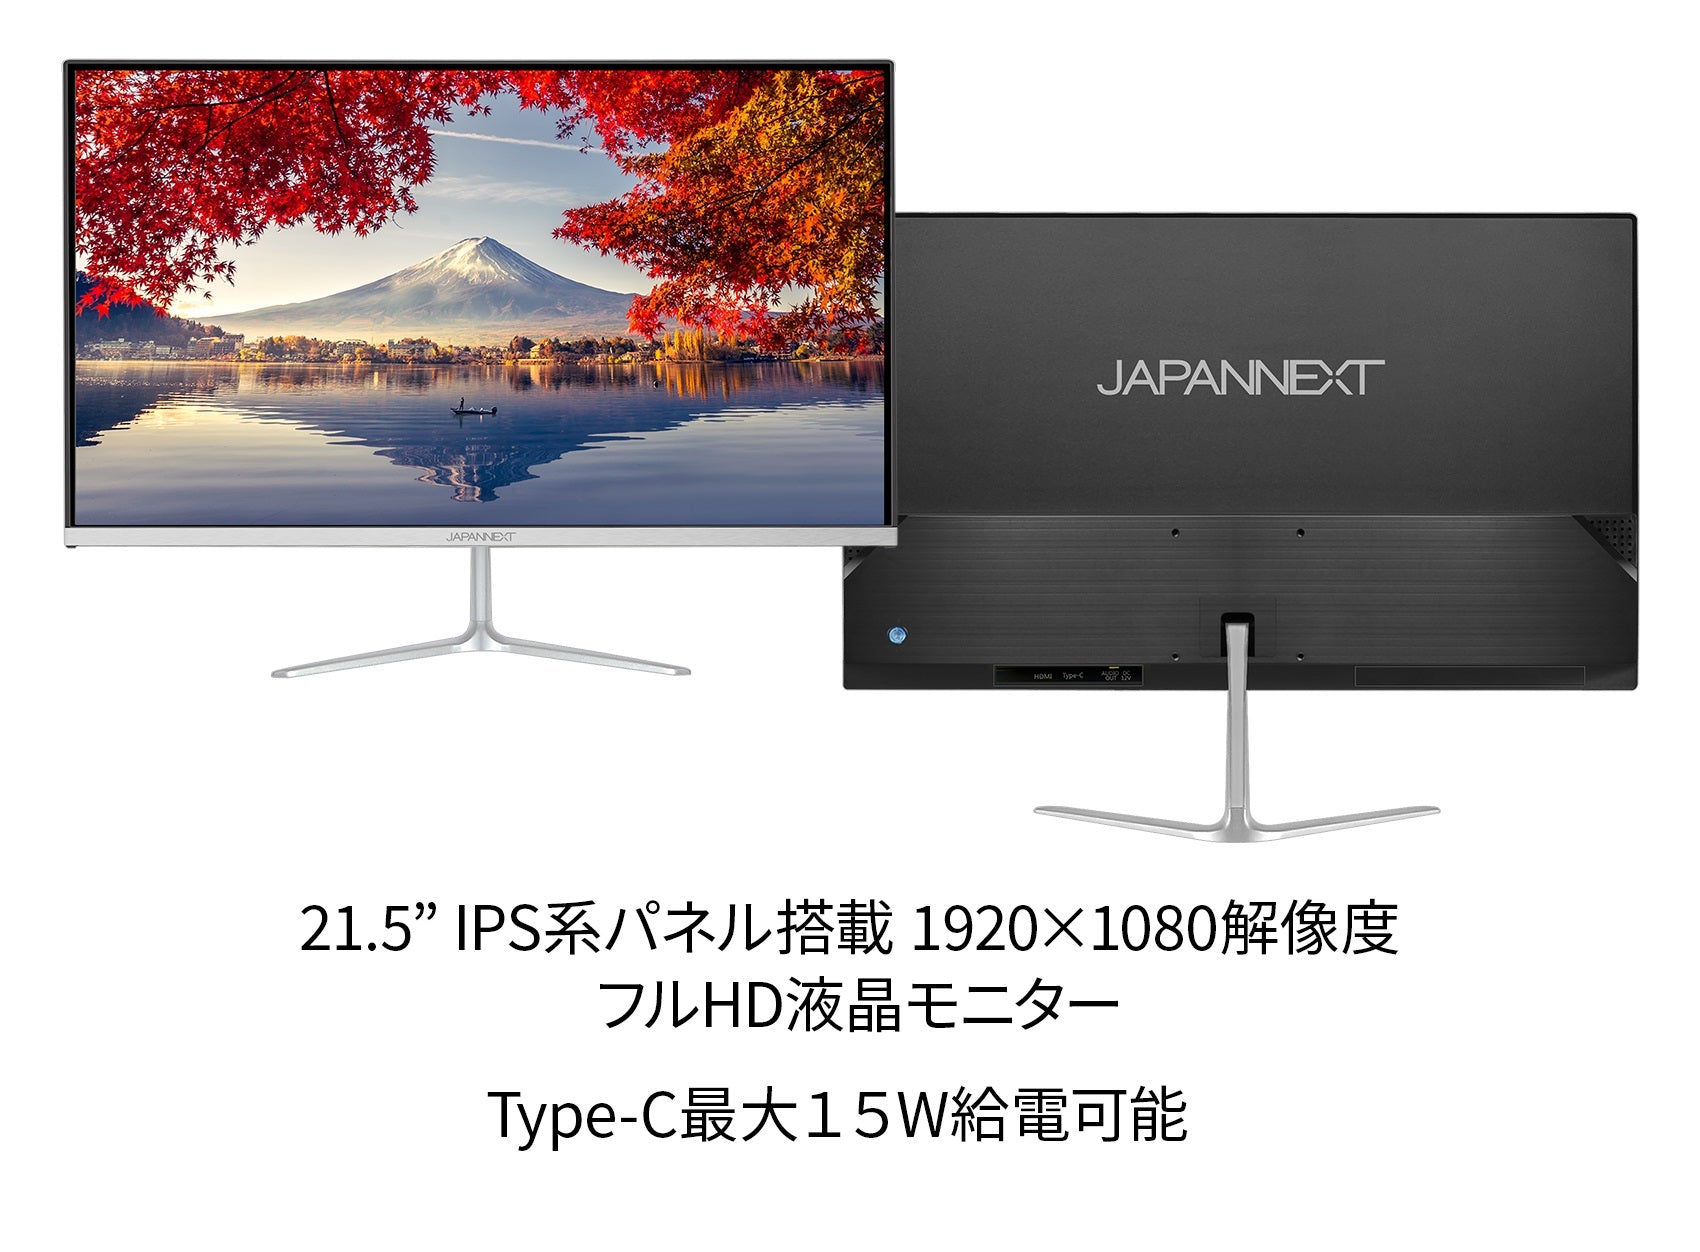 JAPANNEXT 21.5インチIPSパネル搭載 フルHD液晶モニター